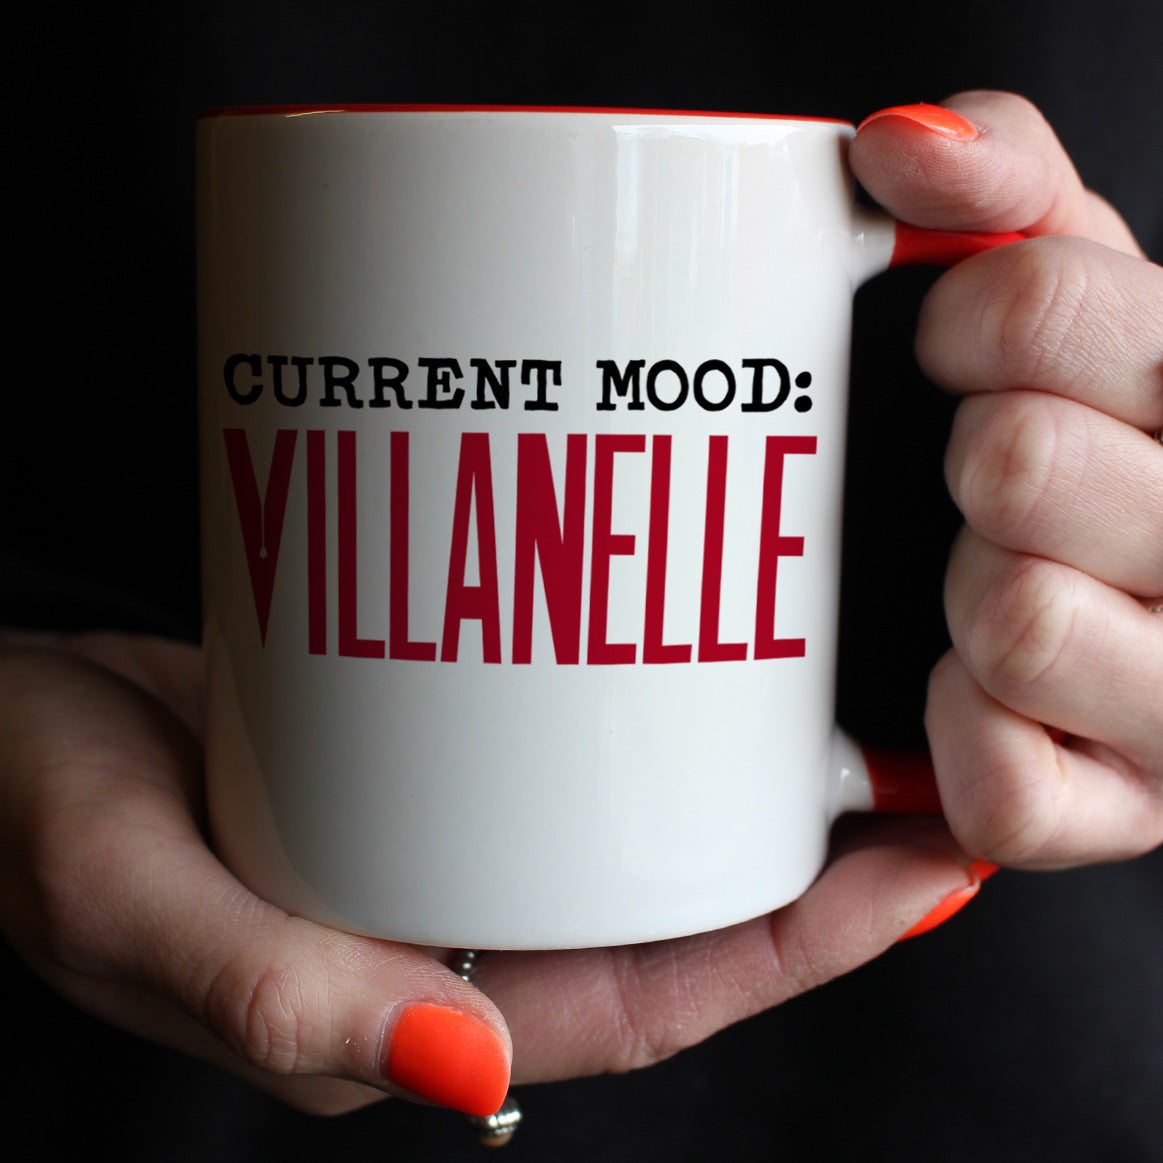 Current Mood Villanelle Red Inner 2-Tone Mug